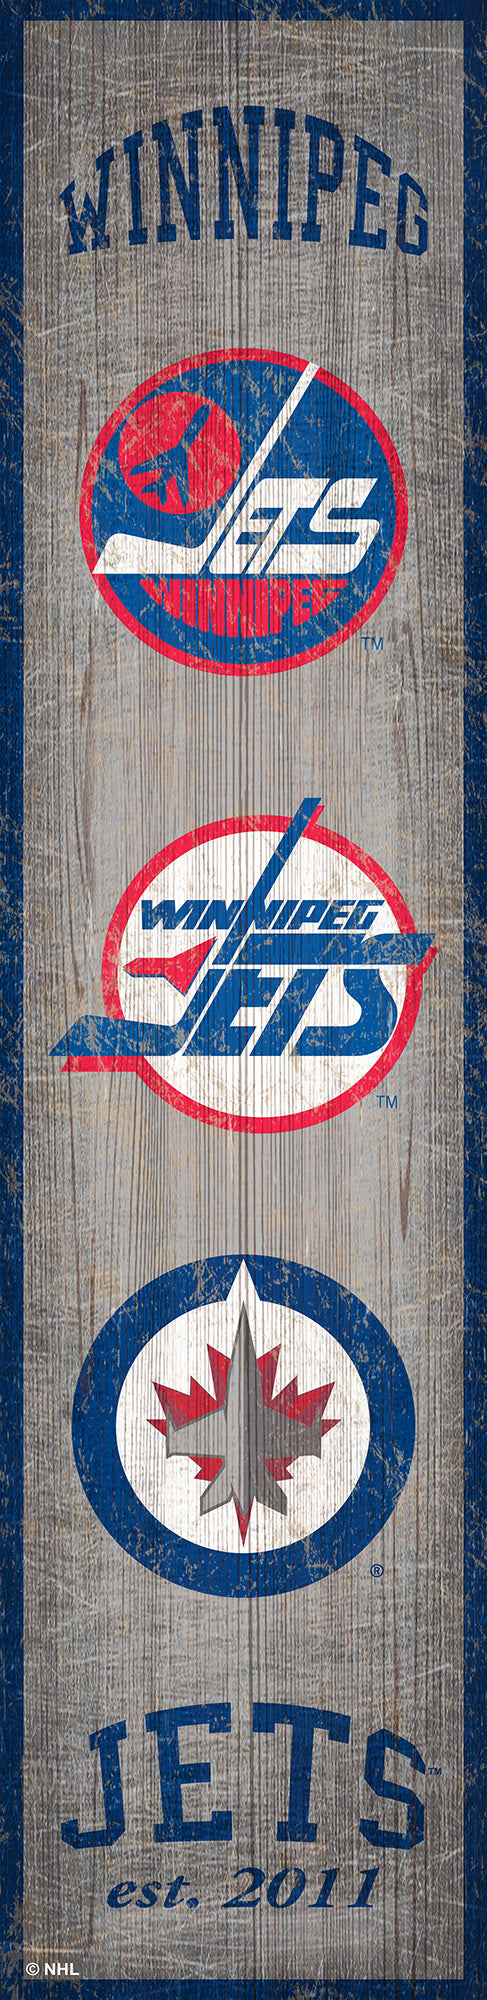 Winnipeg Jets Heritage Banner Wood Sign - 6